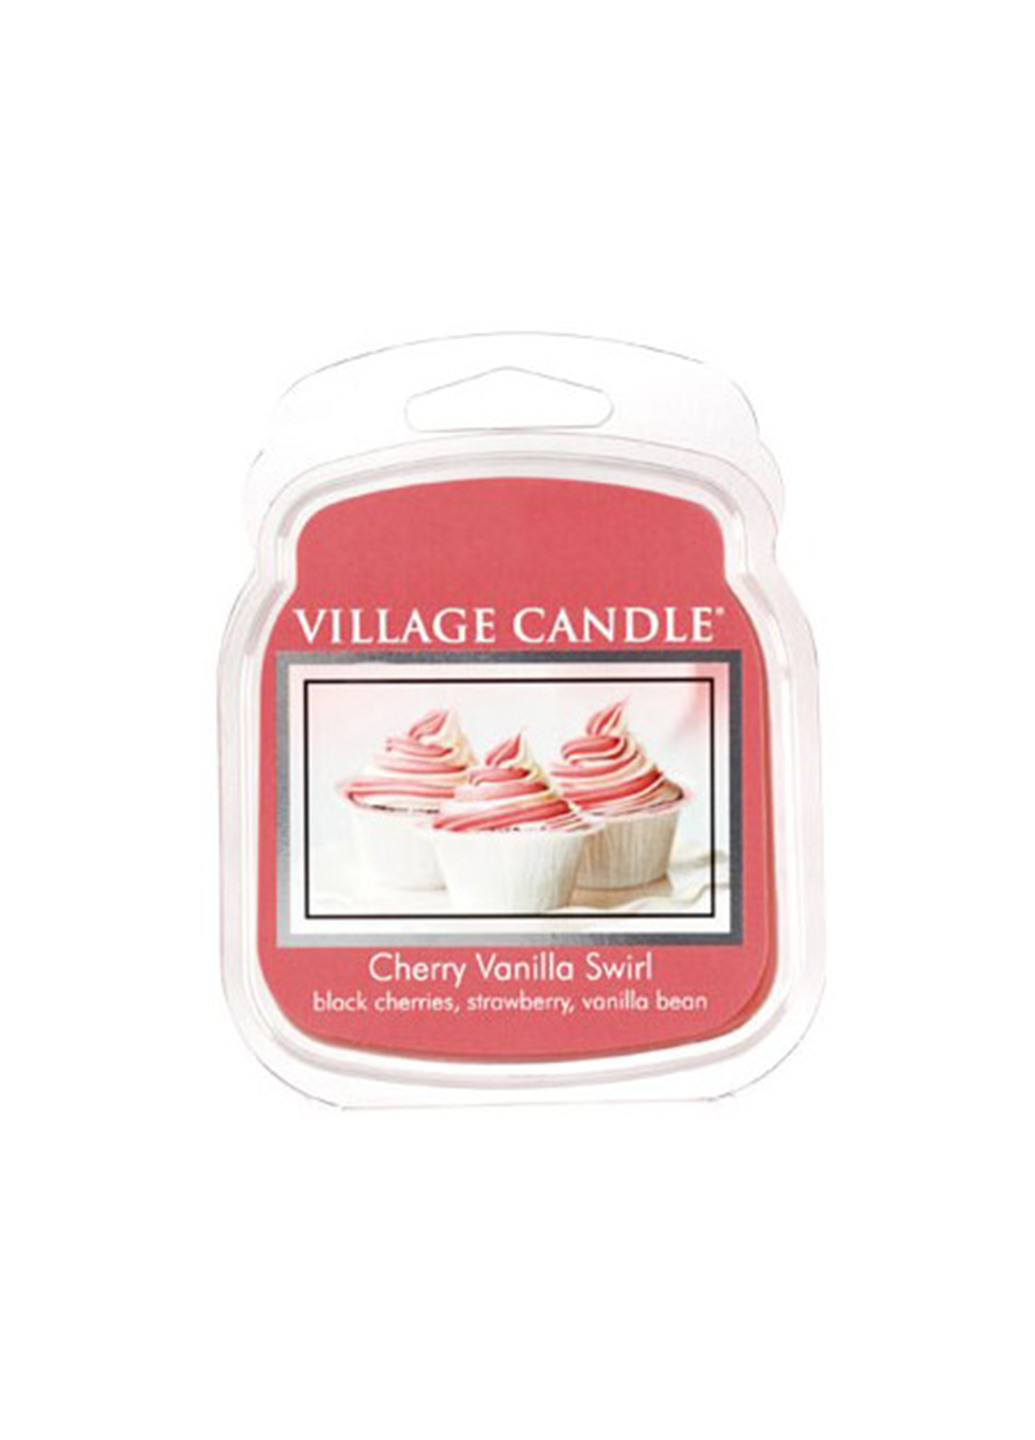 Віск для аромаламп "Вишнево-ванільний вихор" Cherry Vanilla Swirl 62 г Village Candle (214365575)